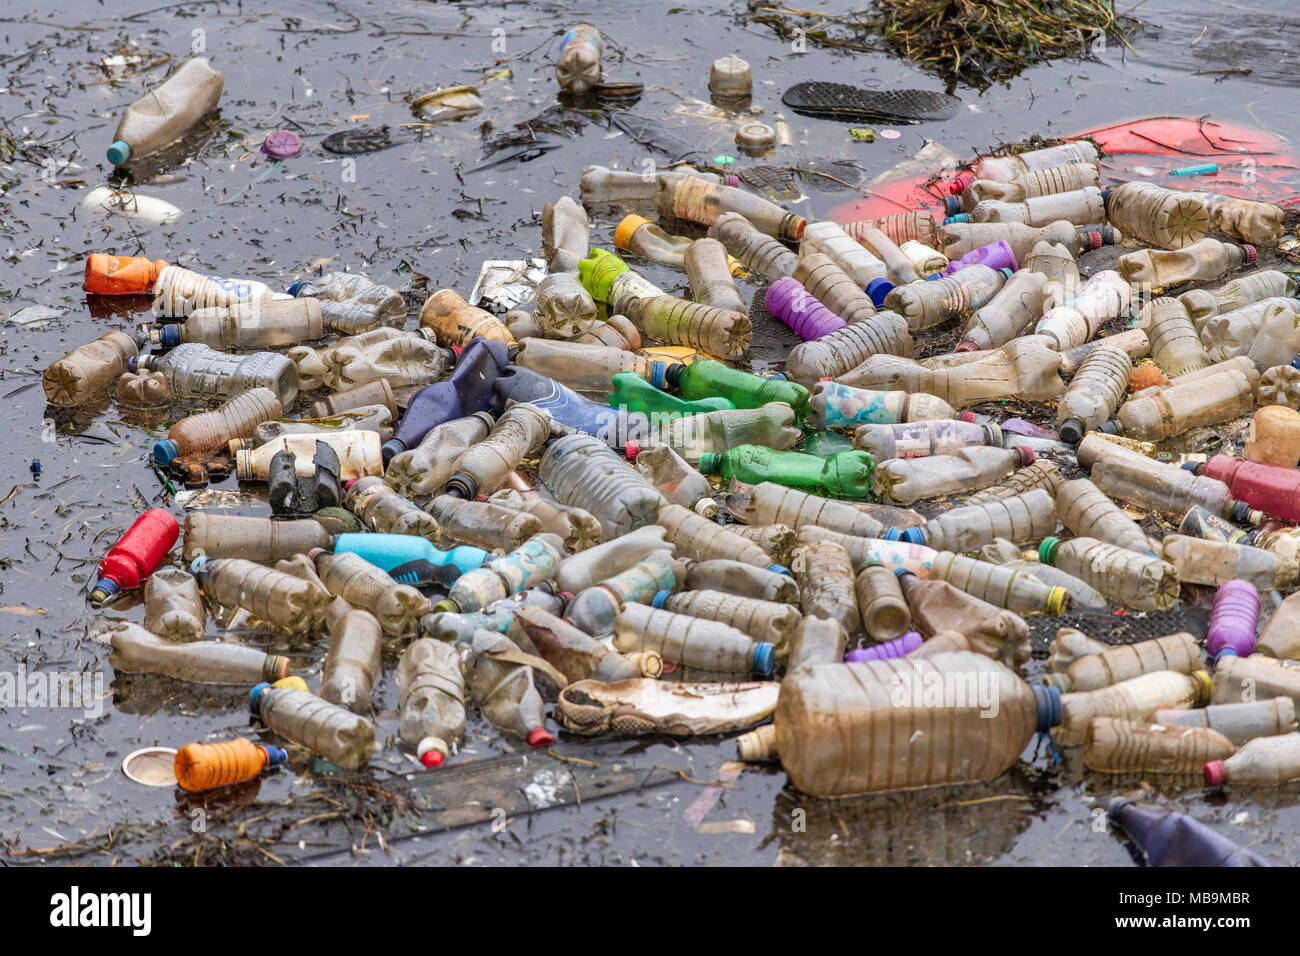 Les bouteilles en plastique à usage unique des déchets vu flottant dans l'eau à la baie de Cardiff, Pays de Galles, Royaume-Uni. Banque D'Images